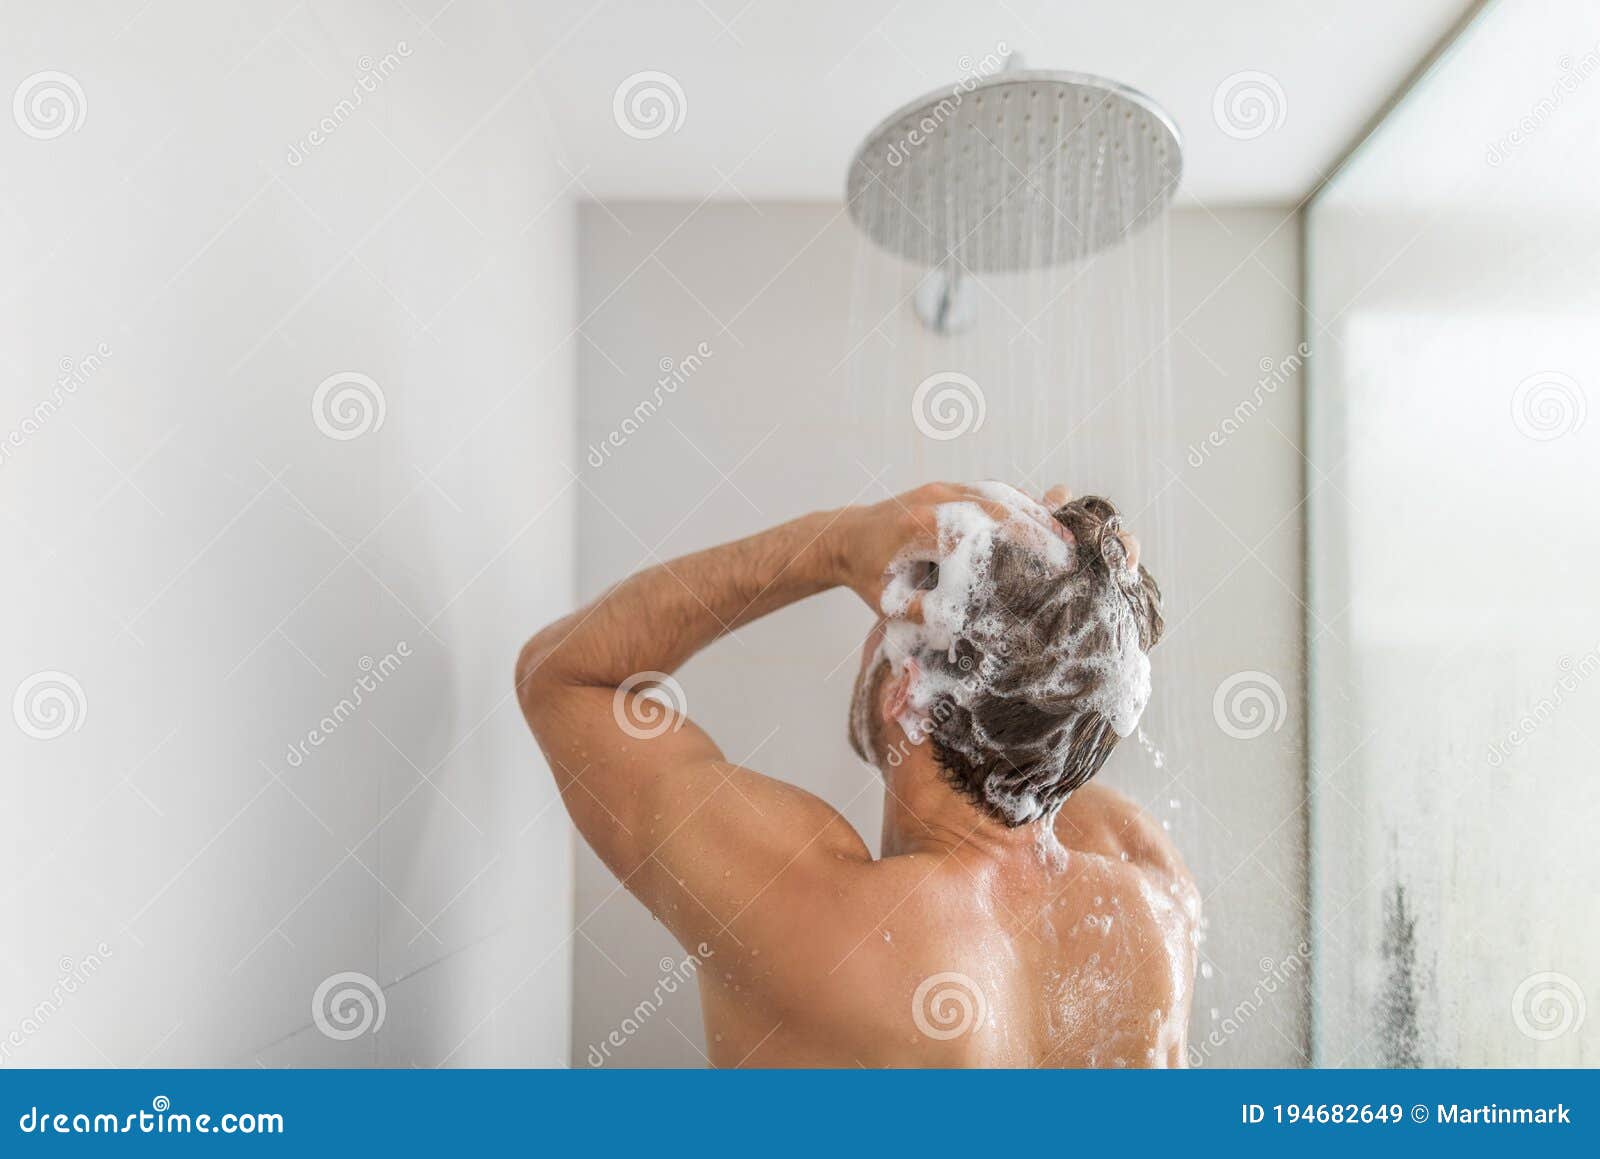 Homme Prenant Des Cheveux De Lavage De Douche Sous L'eau Qui Tombe Du Ciel  De Pluie Dans Le Bain De Luxe à L'italienne. Le Jeune a Image stock - Image  du chaud